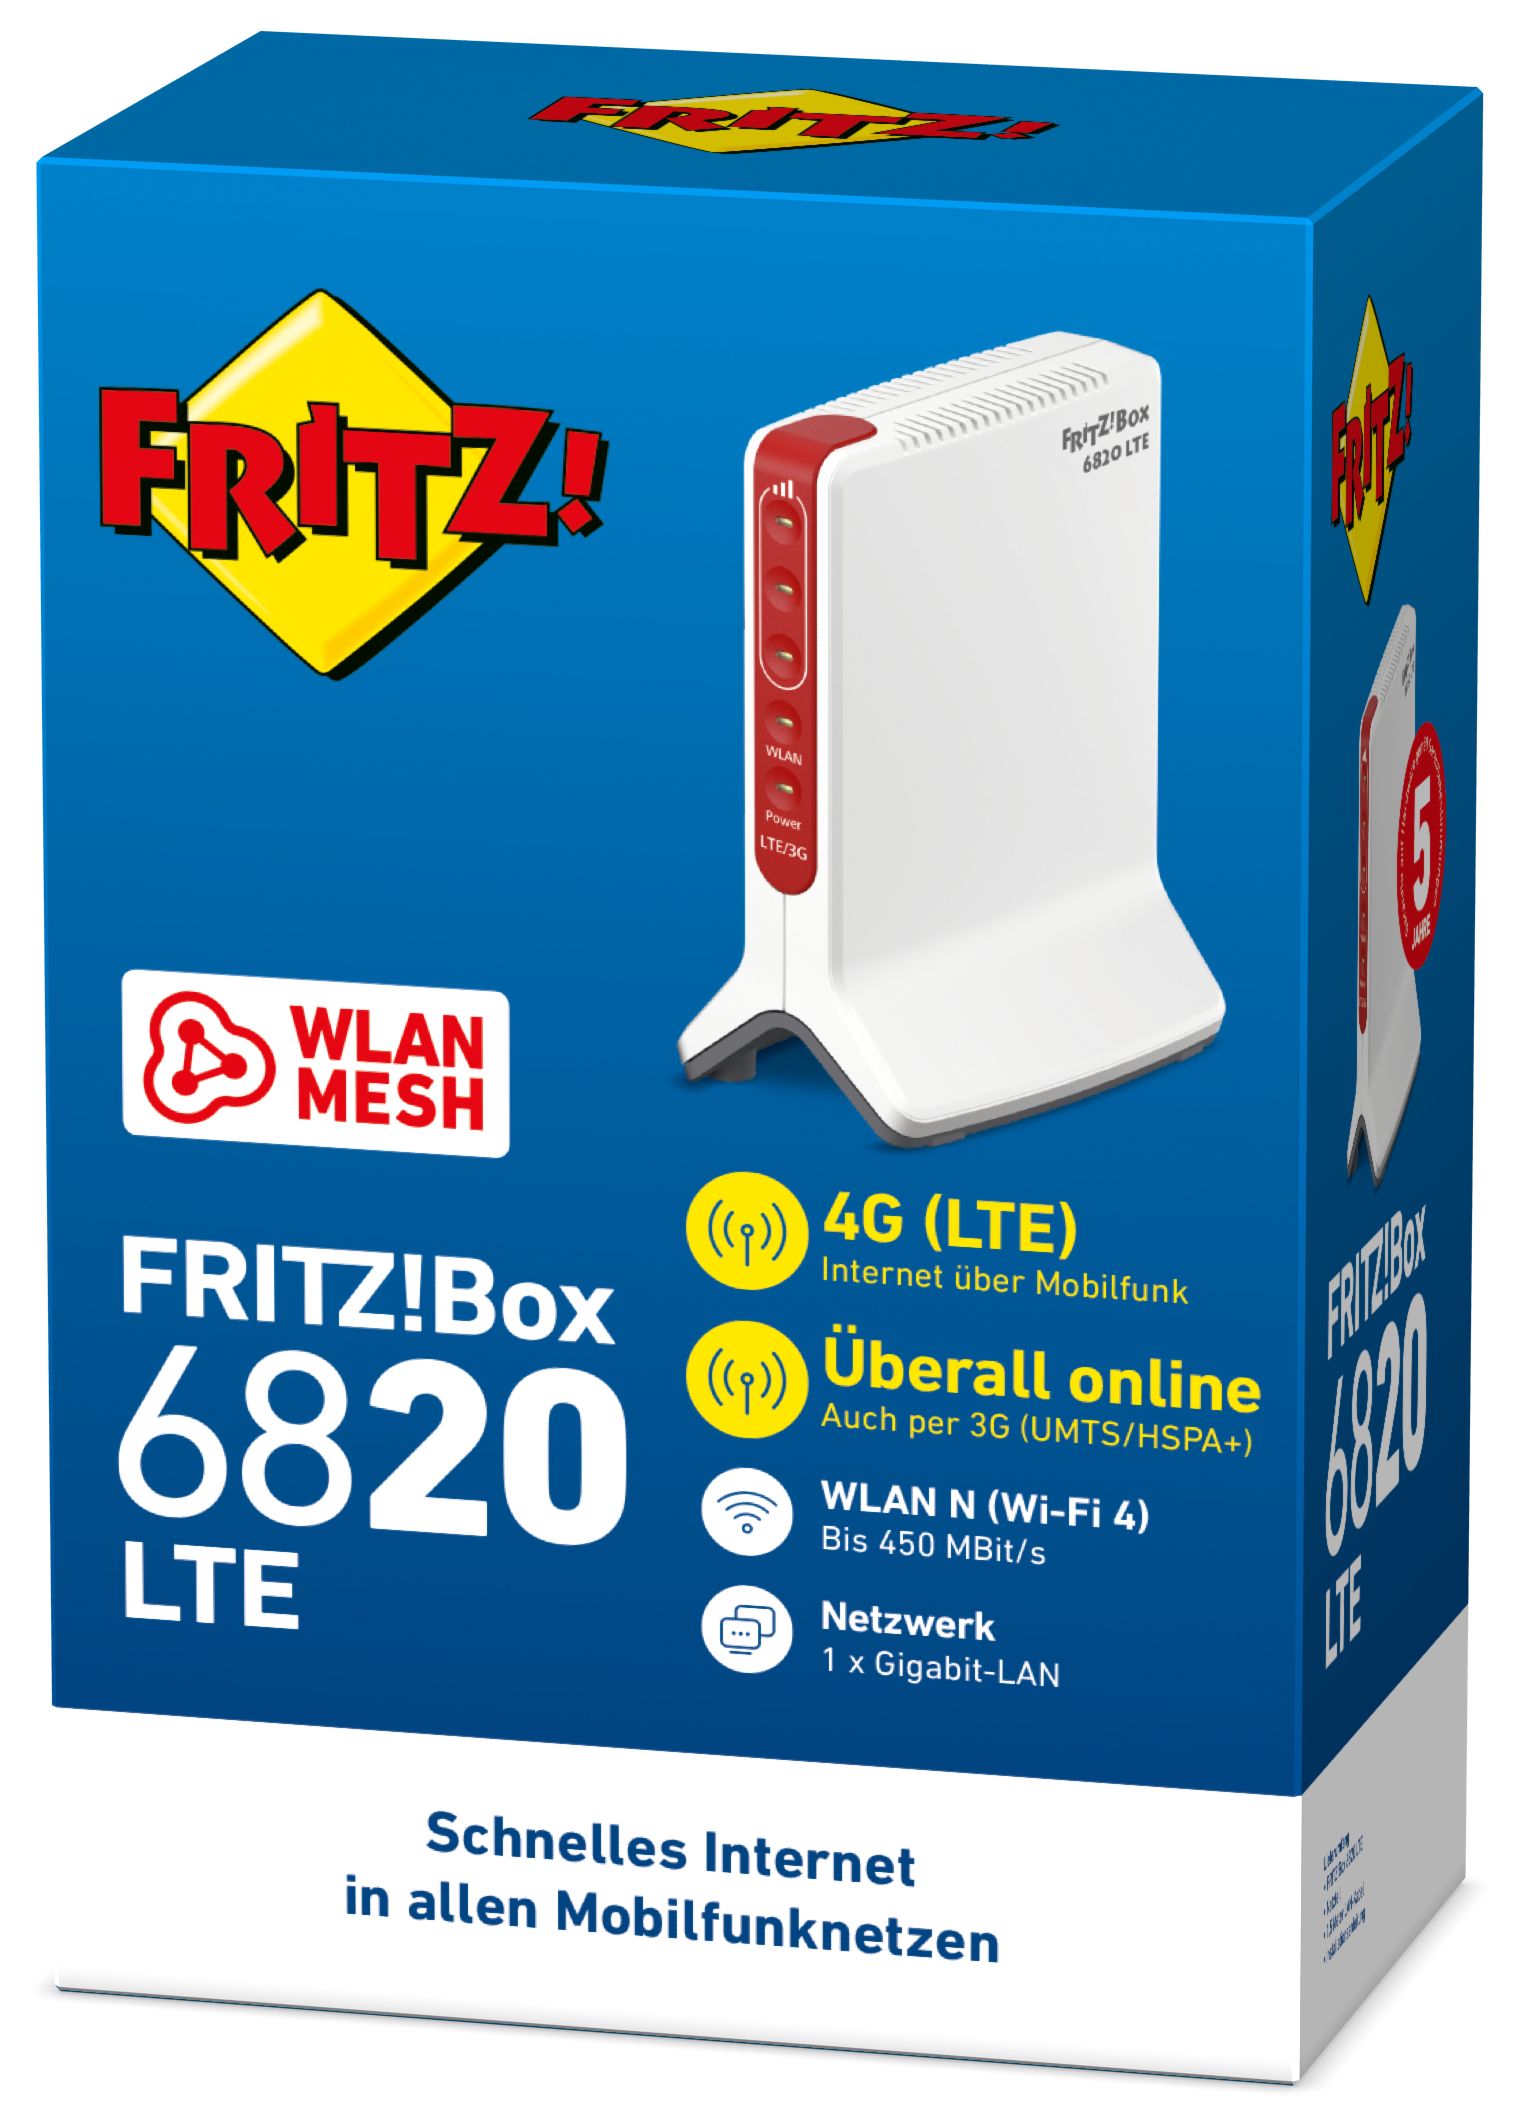 AVM FRITZ!Box 6820 LTE Wi-Fi 450 Technomarkt Mbit/s von Router (802.11n) 4 (2,4GHz) Einzelband expert